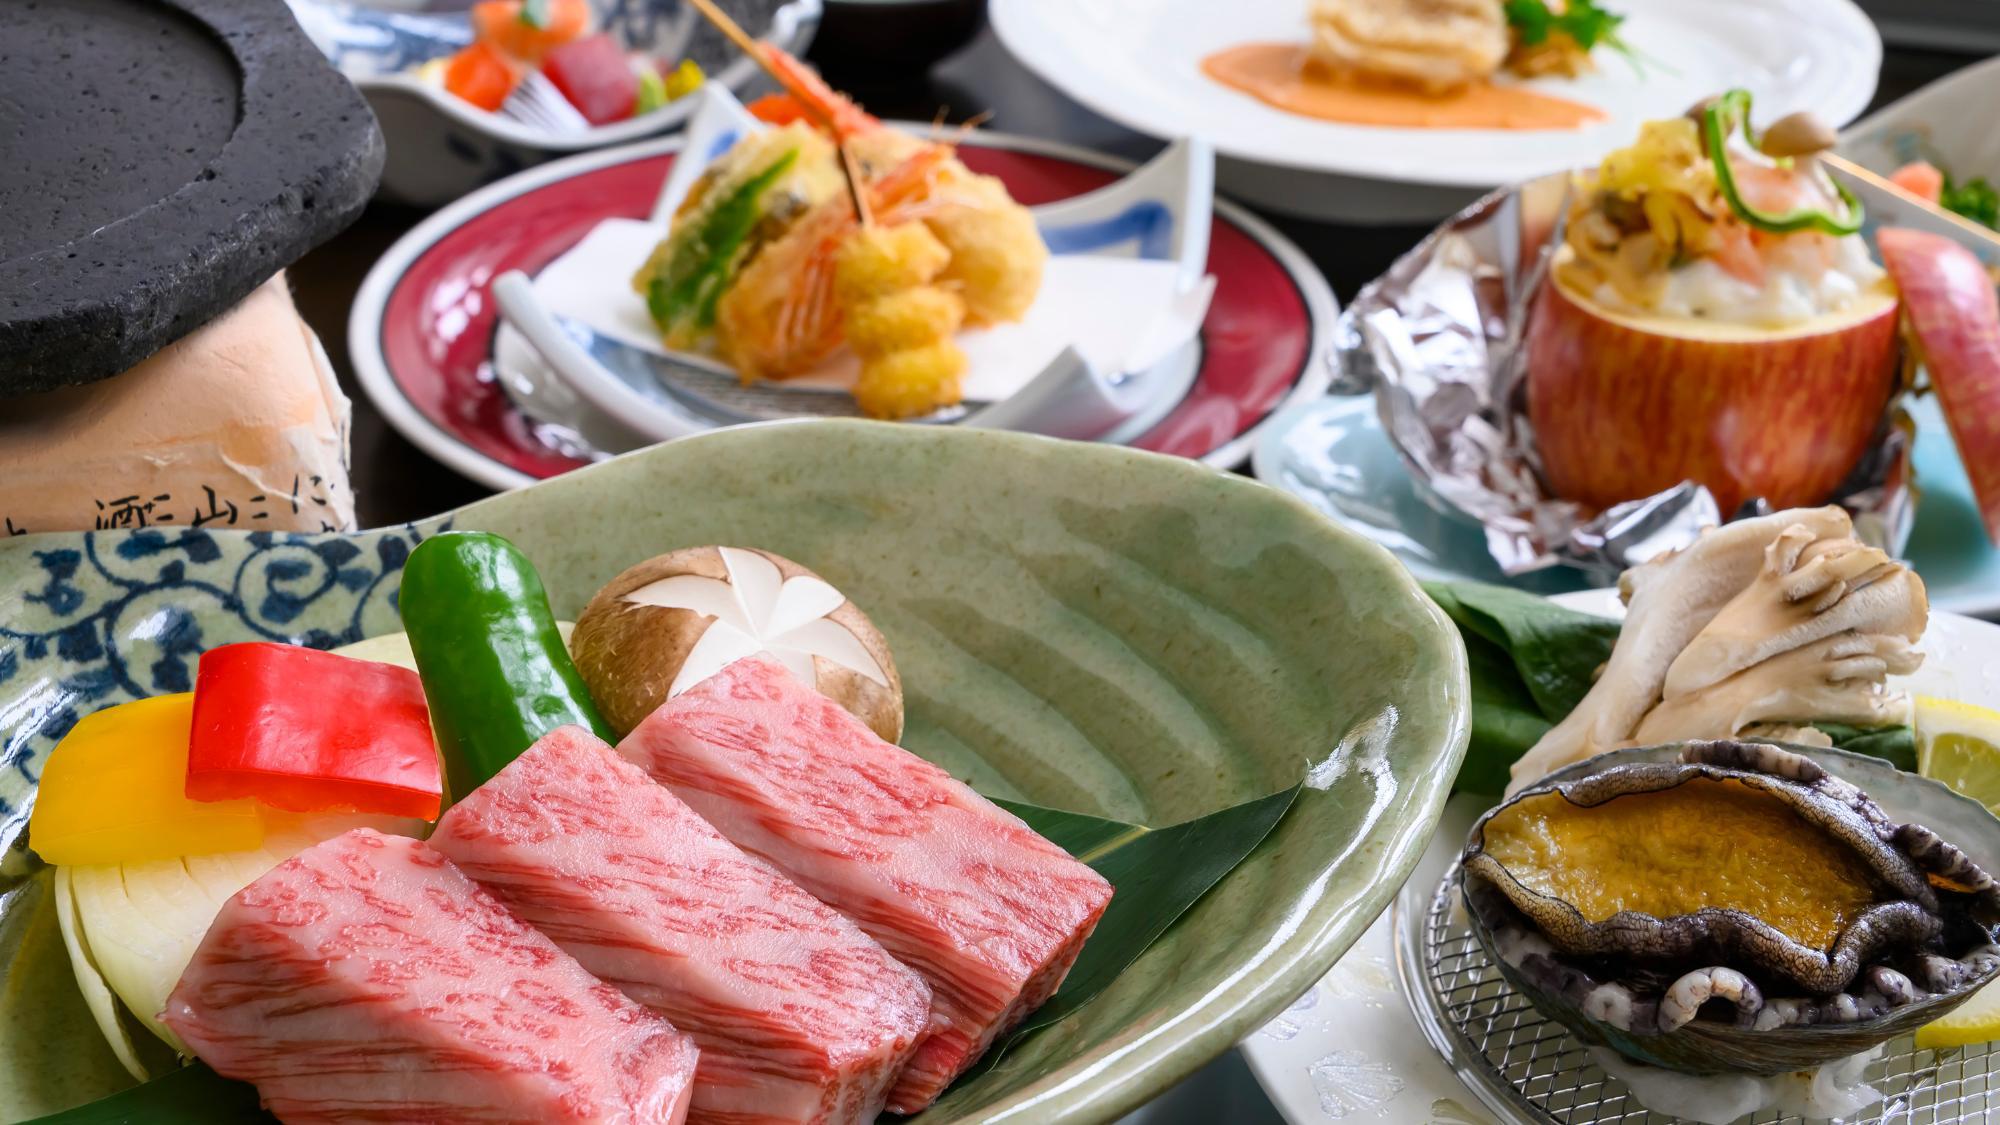 【やまゆり会席】米沢牛の柔らかくジューシーな肉質とまろやかな風味をご堪能ください。